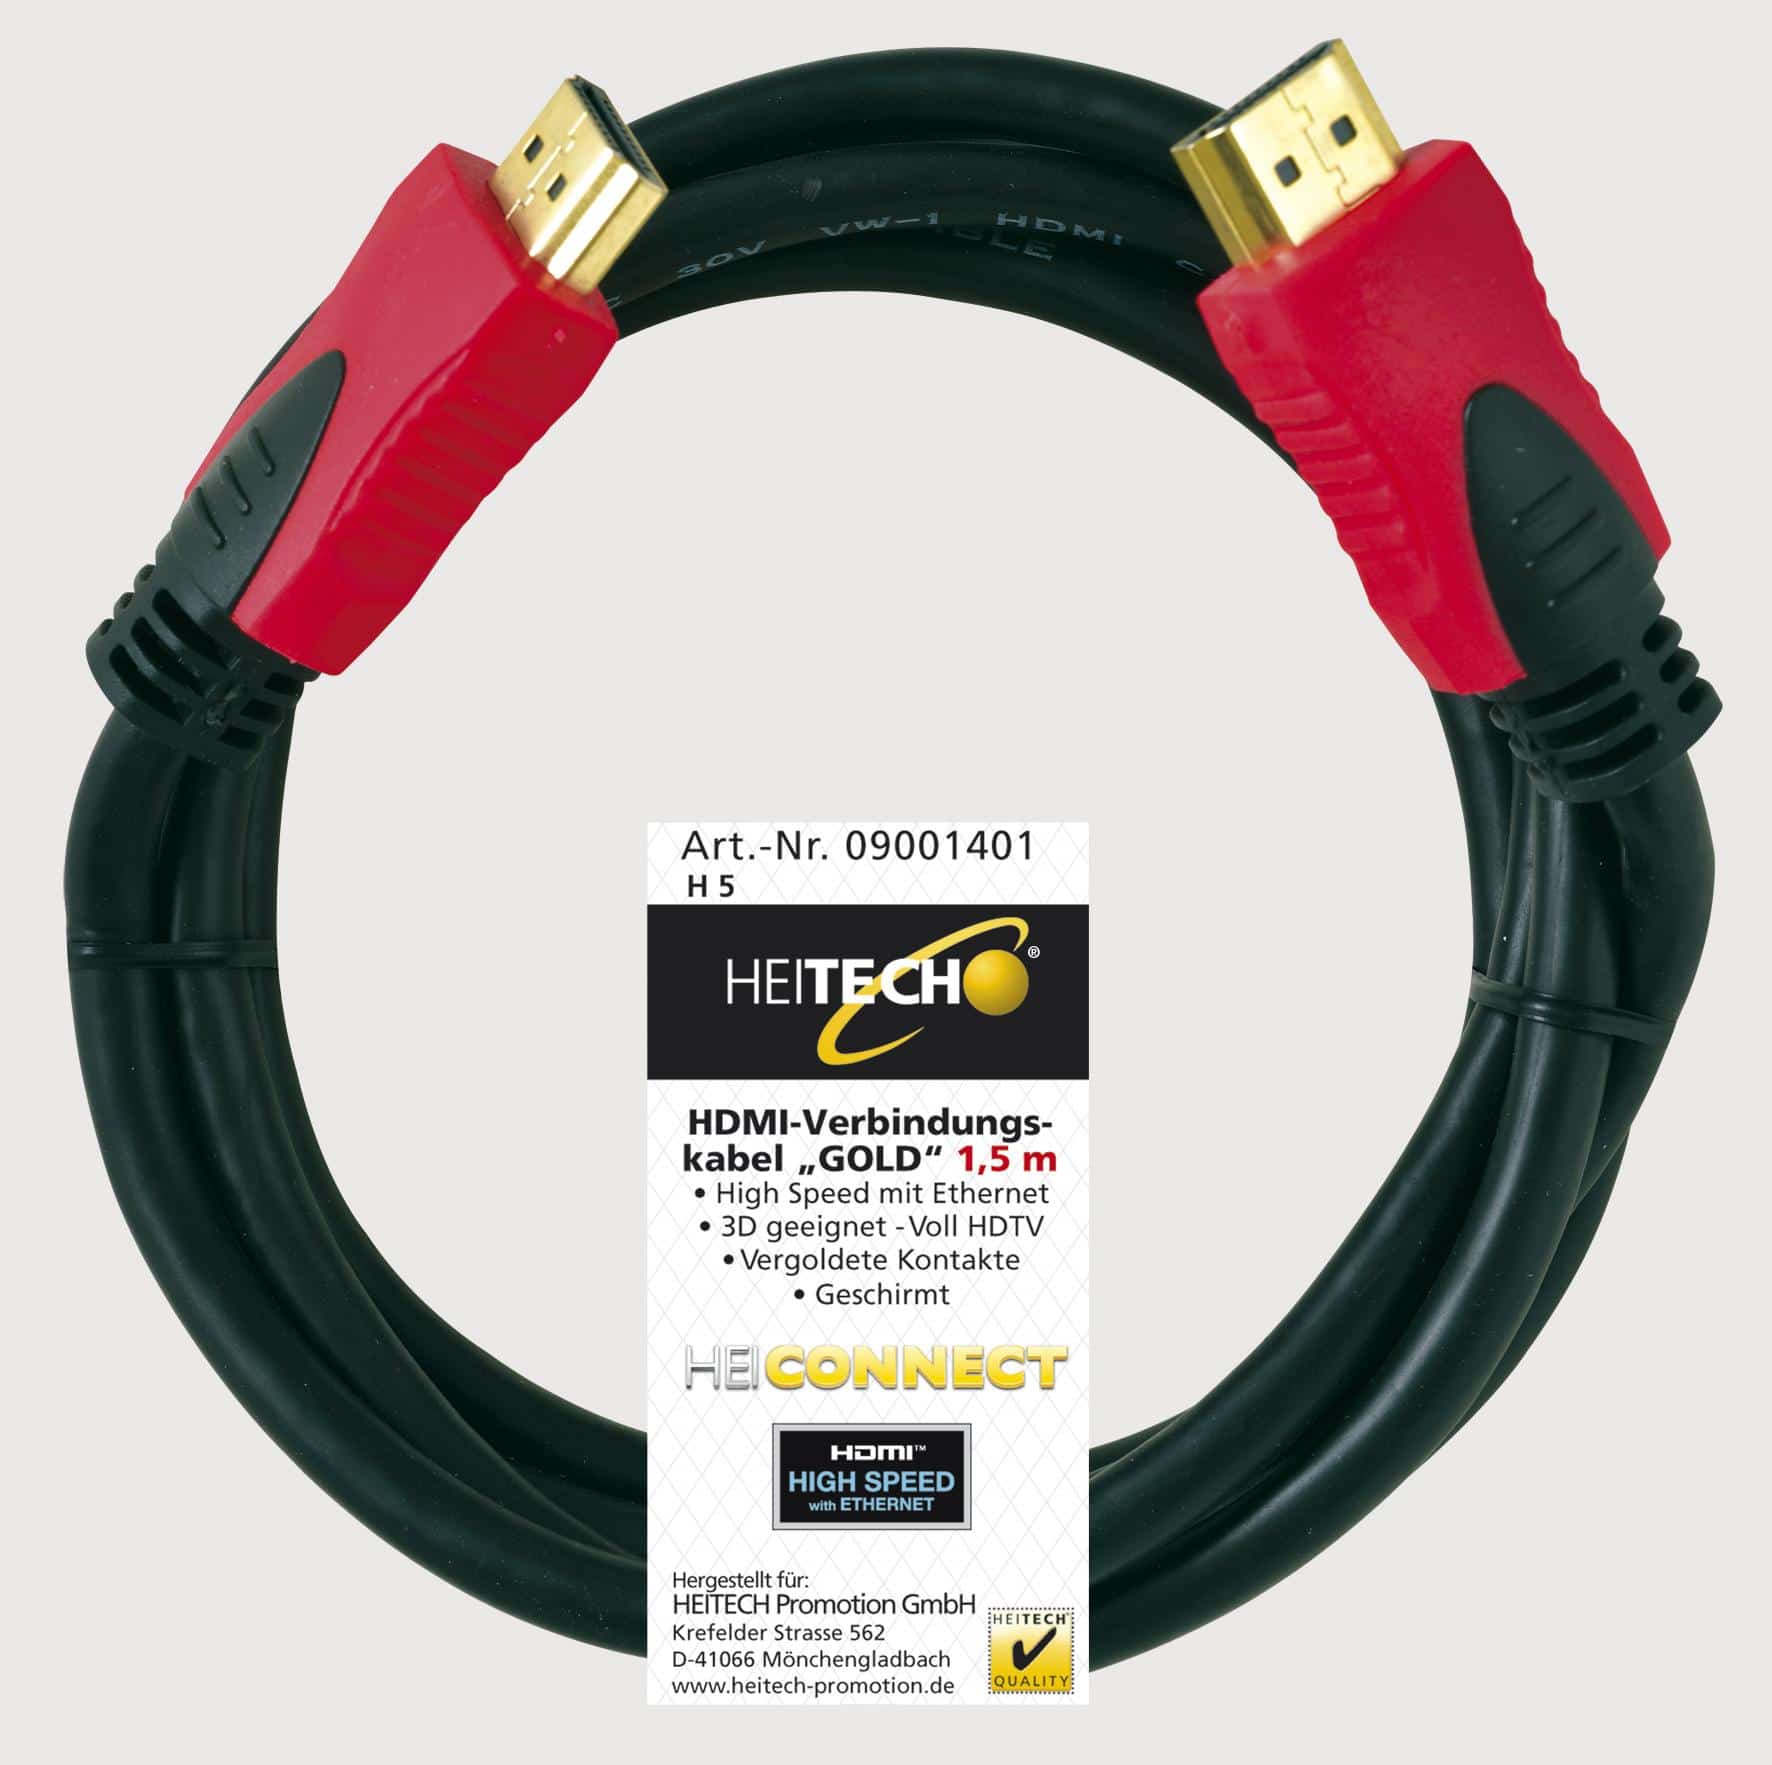 Heitech HDMI-Kabel Gold - in verschiedenen Ausführungen